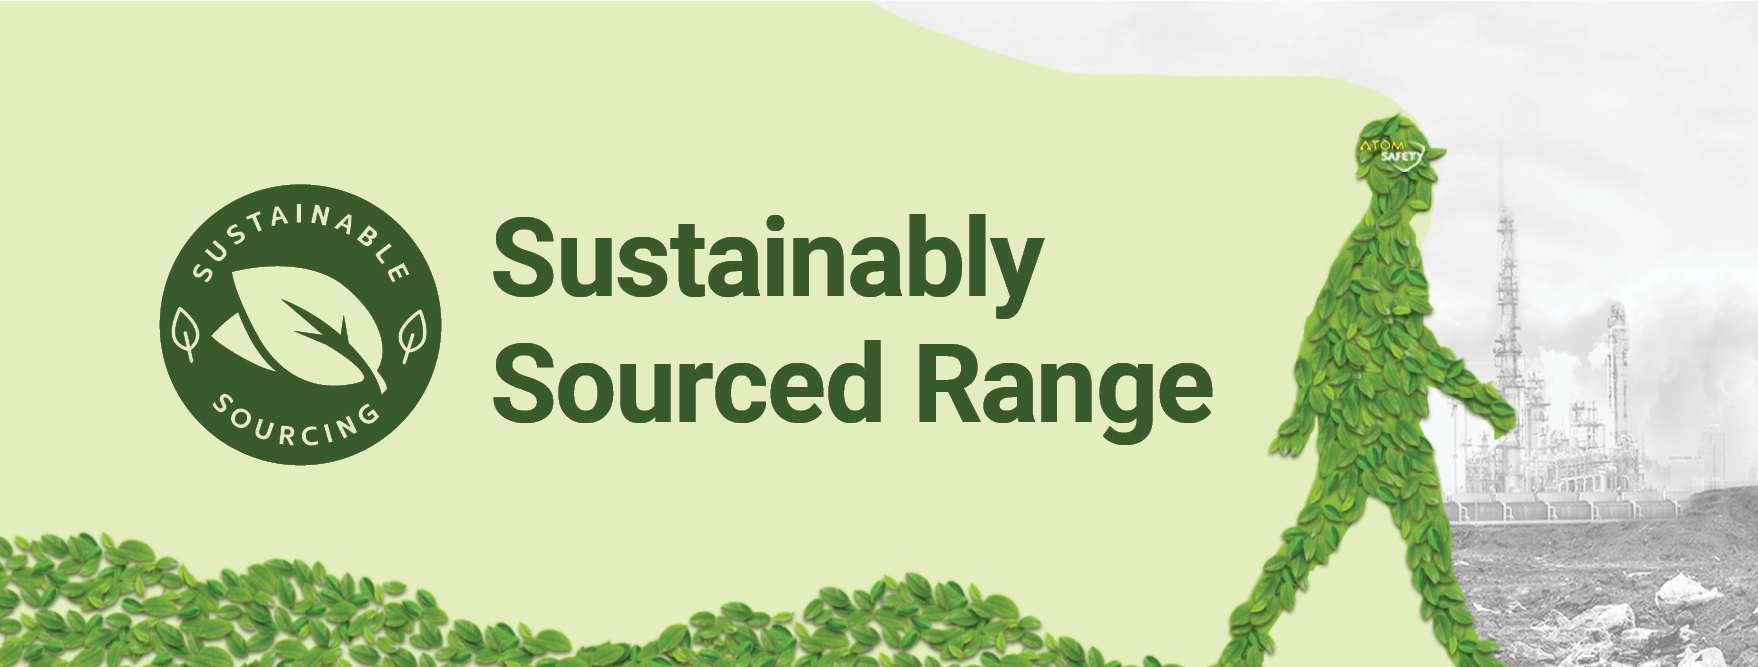 Sustainability Sourced Range 